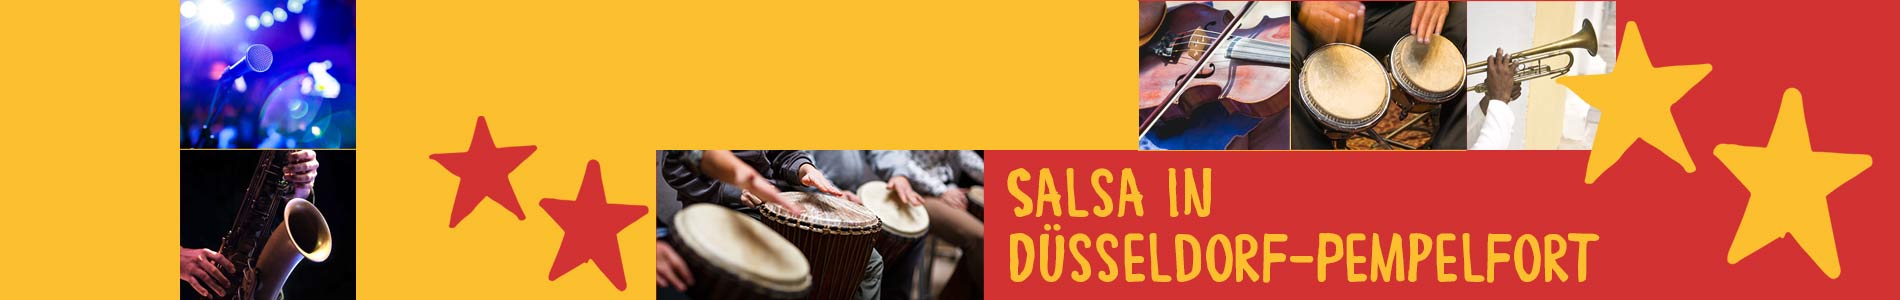 Salsa in Düsseldorf – Salsa lernen und tanzen, Tanzkurse, Partys, Veranstaltungen